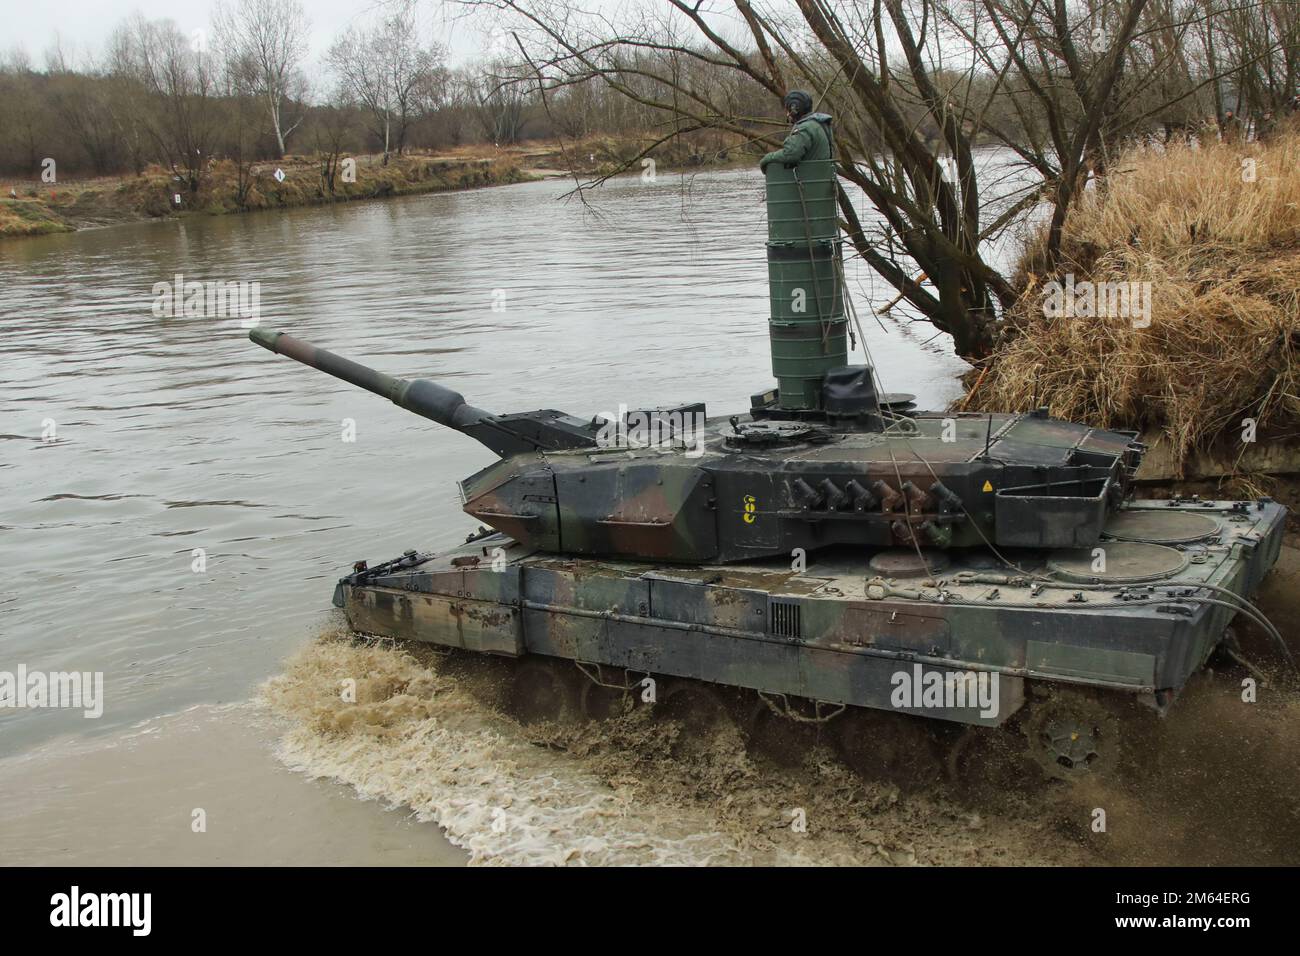 Ein polnischer Leopard 2-Tank überquert einen Fluss, während er von amerikanischen Fallschirmjägern während einer kombinierten Übung in der Nähe von Zamosc, Polen, im März 31 bewacht wird. Das 3. Brigaden-Kampfteam, 82. Luftwaffe, wird in Polen eingesetzt, um die USA zu unterstützen Europäisches Kommando, um unsere NATO-Alliierten zu versichern. Stockfoto